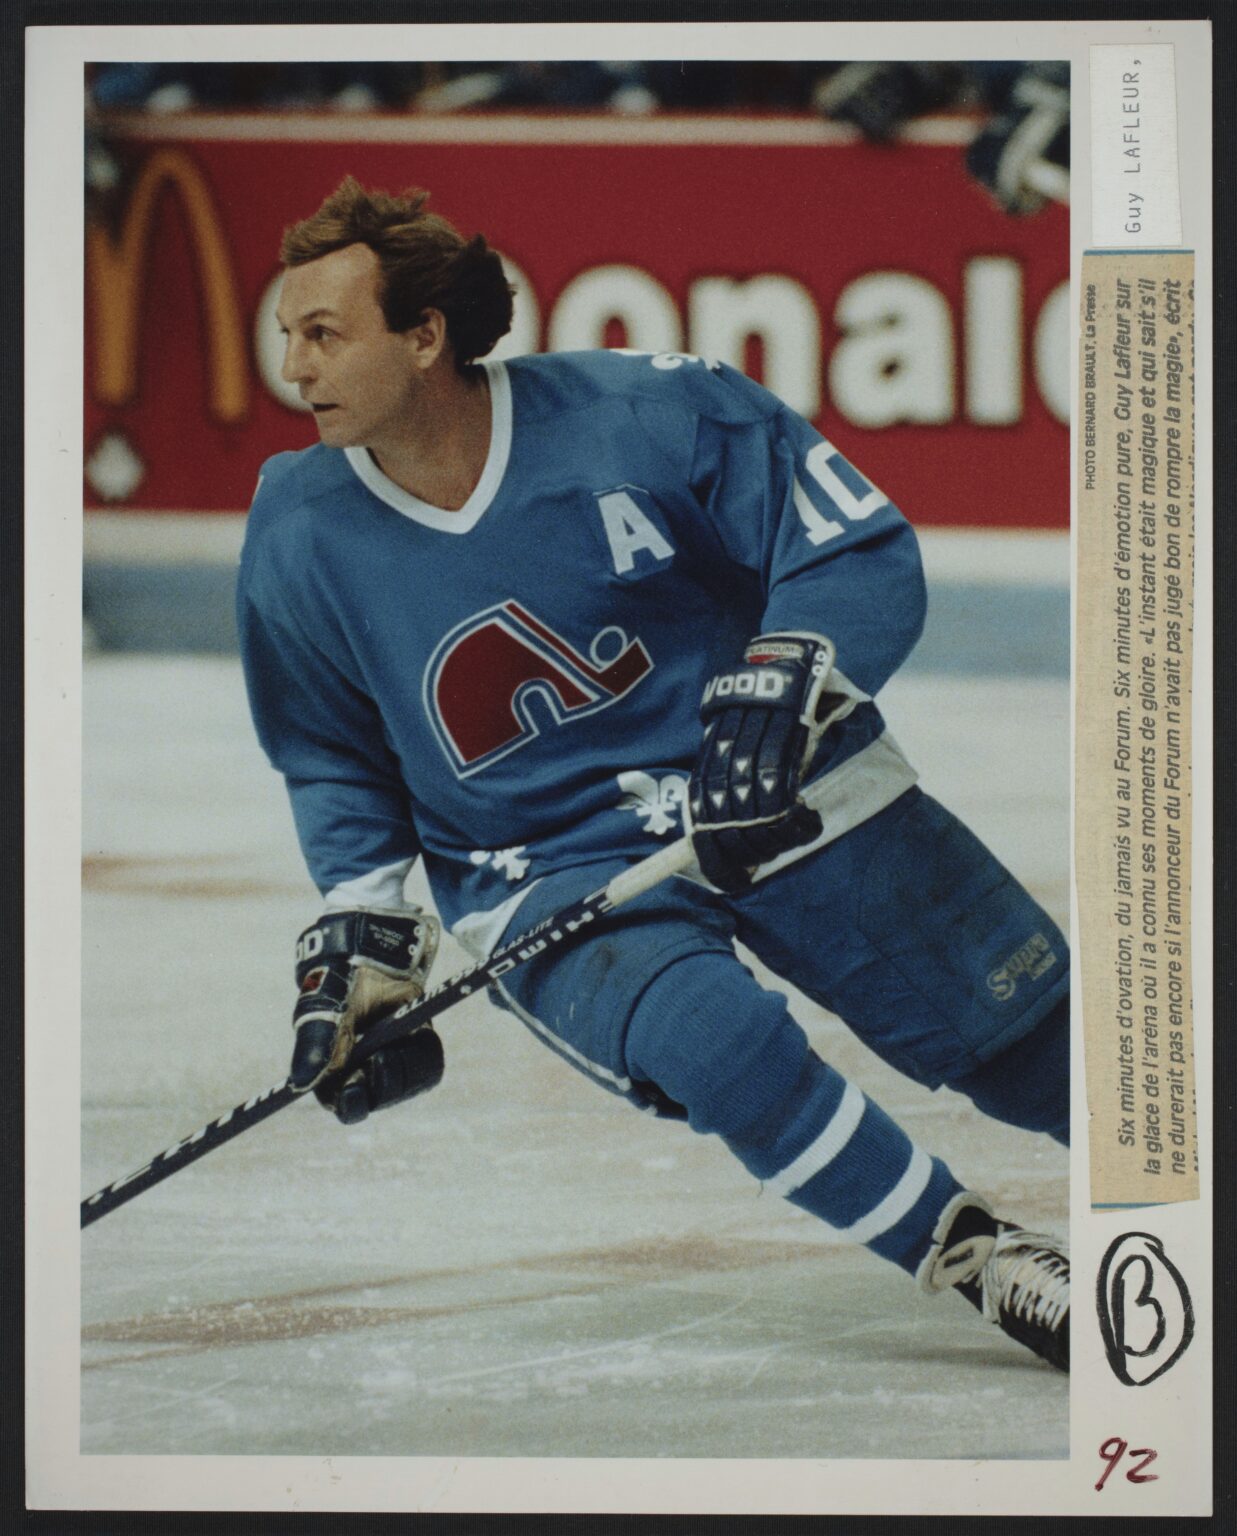 Le 30 mars 1991, après une saison dans l’uniforme des Rangers de New York, Guy Lafleur termine sa brillante carrière avec les Nordiques de Québec. Il aura cumulé 24 buts et 38 aides durant ses deux dernières années dans la LNH.